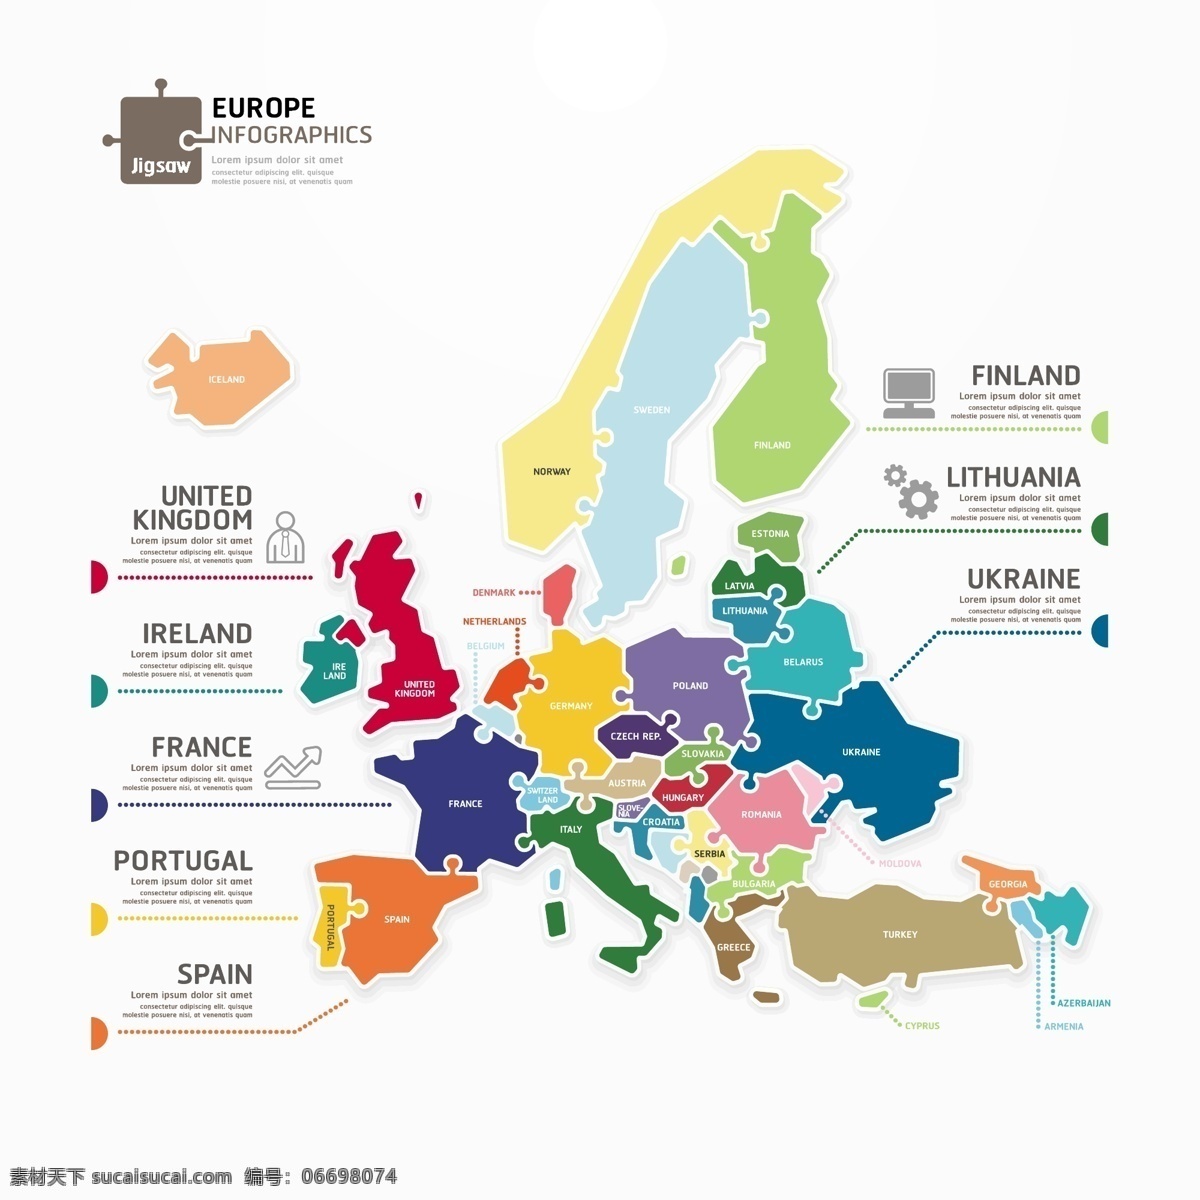 创意 欧洲 地图 商务 信息 图 矢量 欧洲地形图 信息图 头像 人物 电脑 齿轮 图标 标签 拼接 拼图 插画 背景 海报 画册